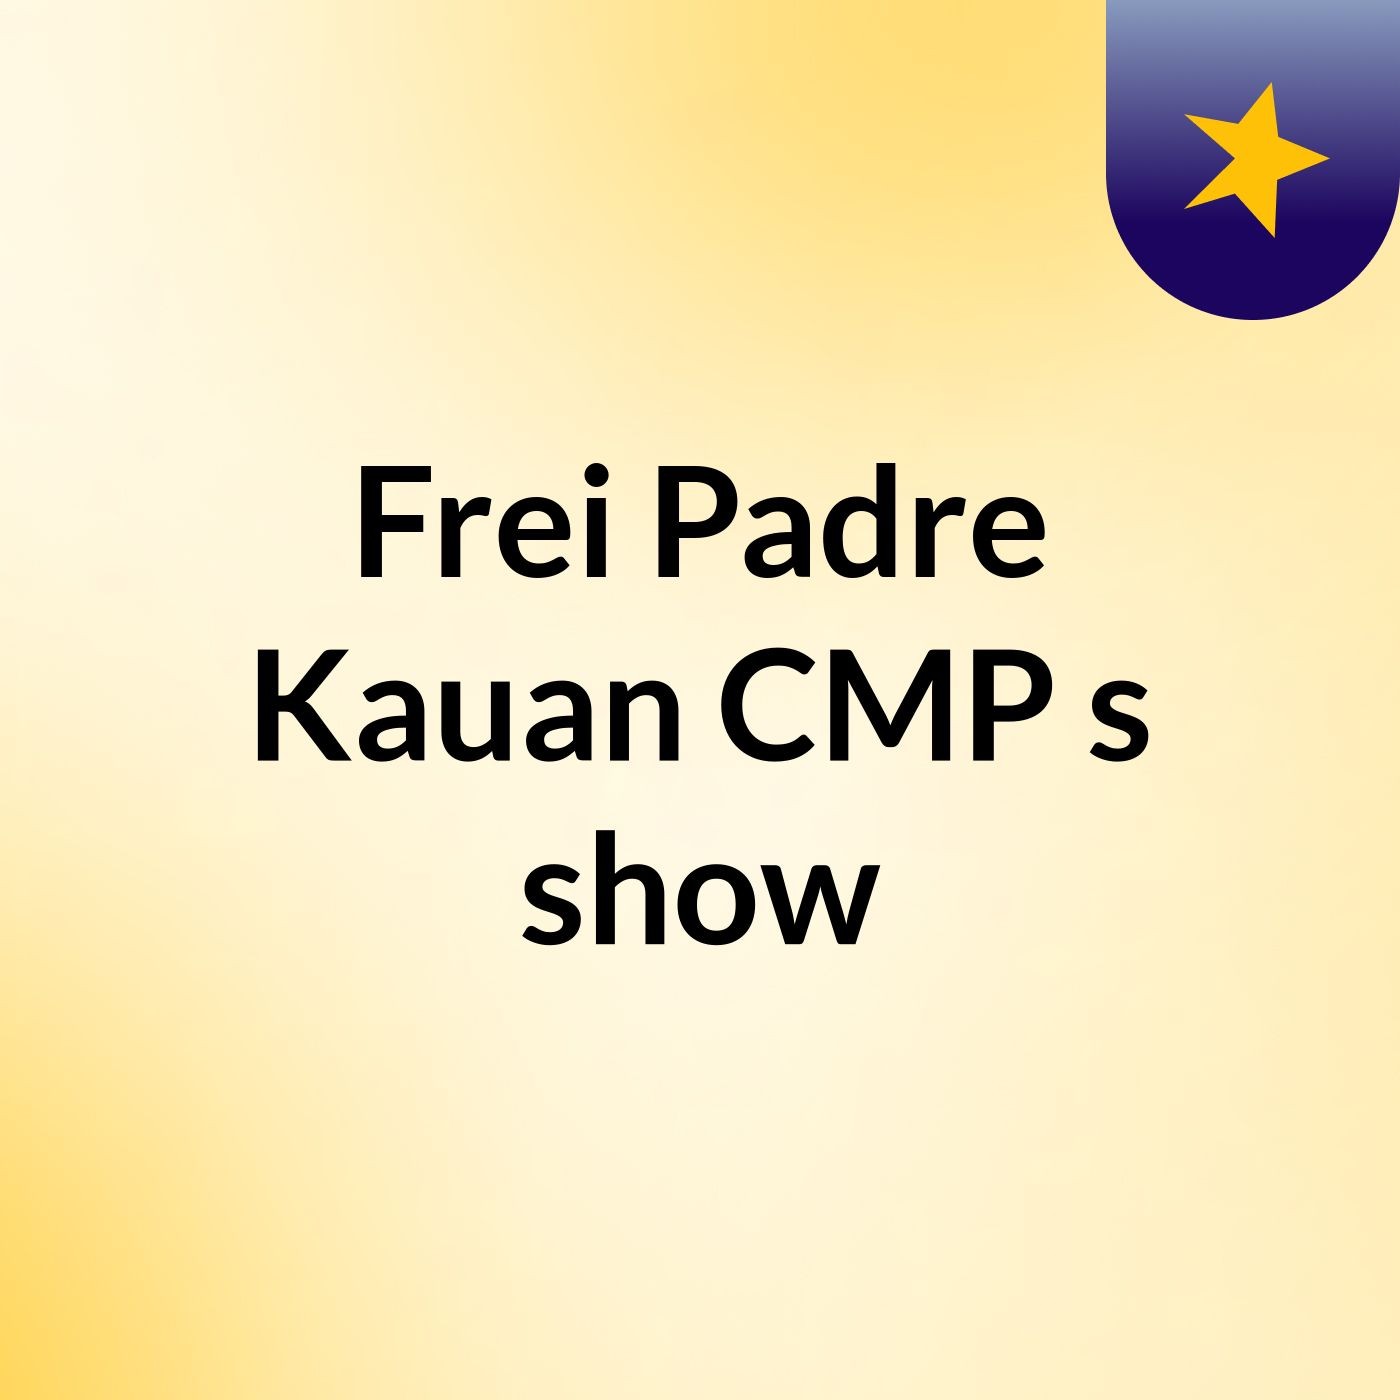 Frei Padre Kauan CMP's show